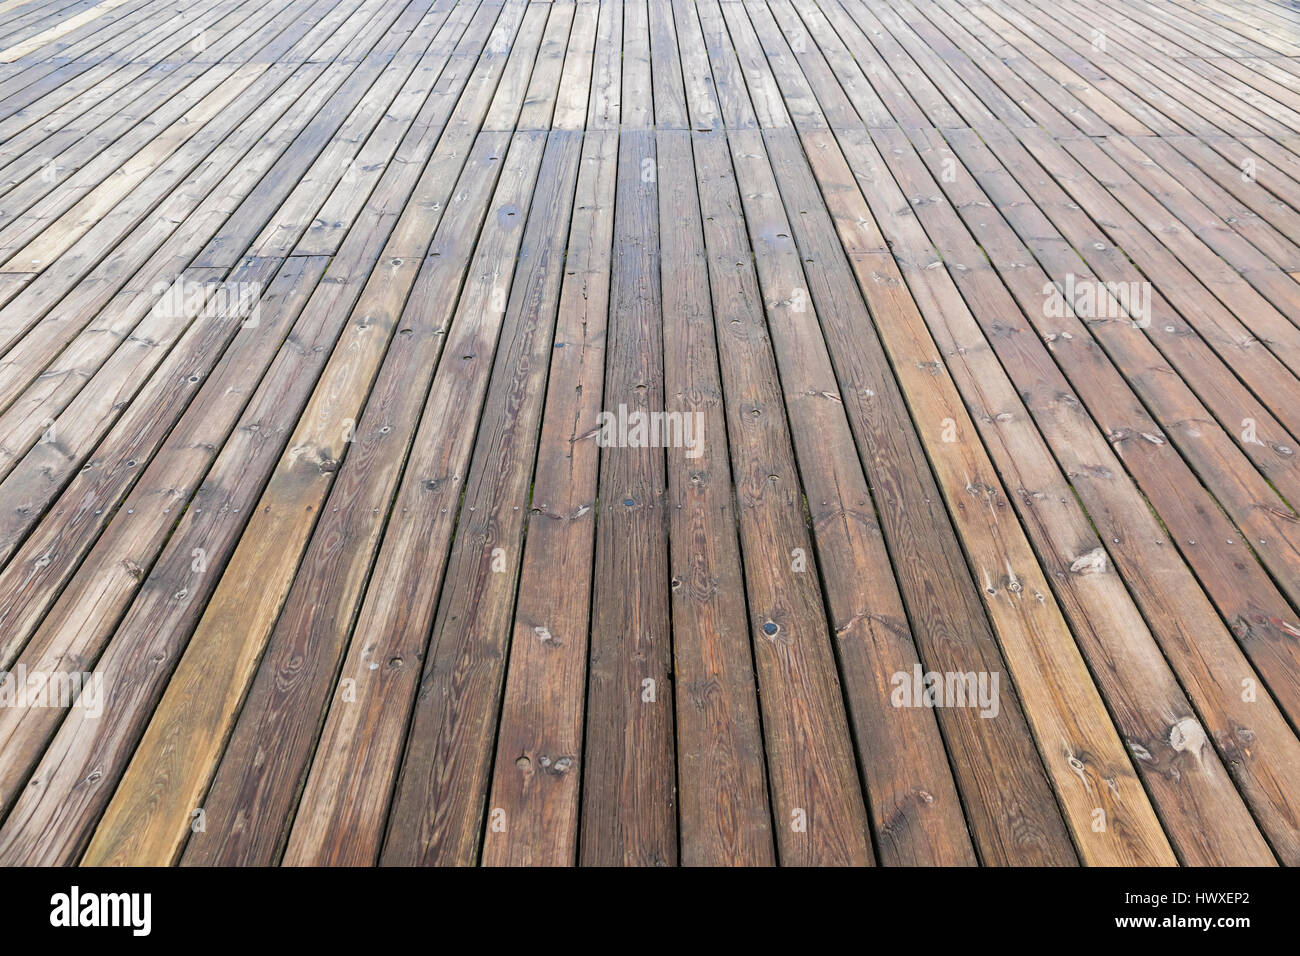 Texture de fond brun en bois ancien avec la perspective. Planches en bois qui constituent une grande pier Banque D'Images